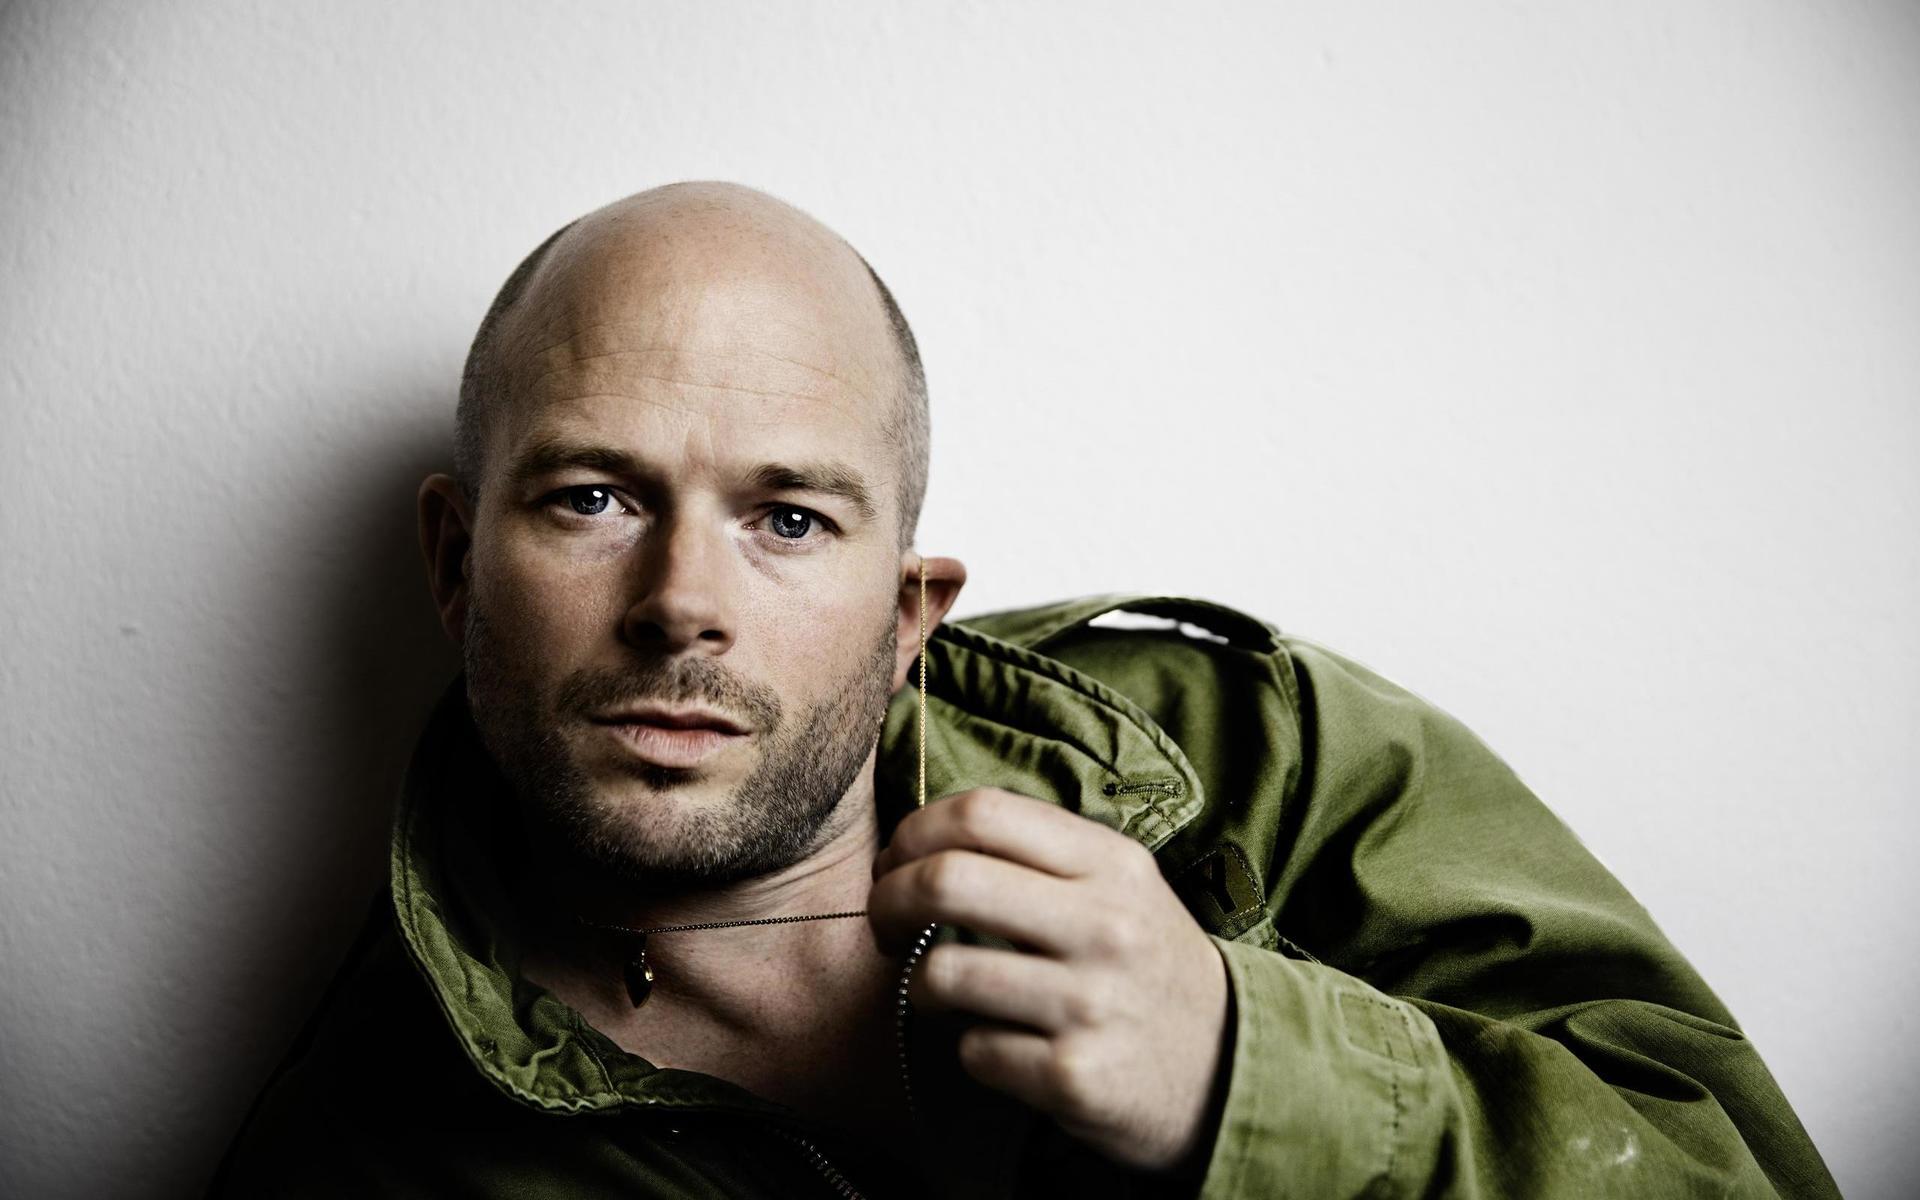 Jonas Lundqvist är artist, född 1980 i Göteborg. Var tidigare trummis i Bad cash quartet och aktiv under sitt alias Jonas Game. Har sedan dess gjort musik under eget namn, 2020 kom skivan ”Dubbla fantasier”. 